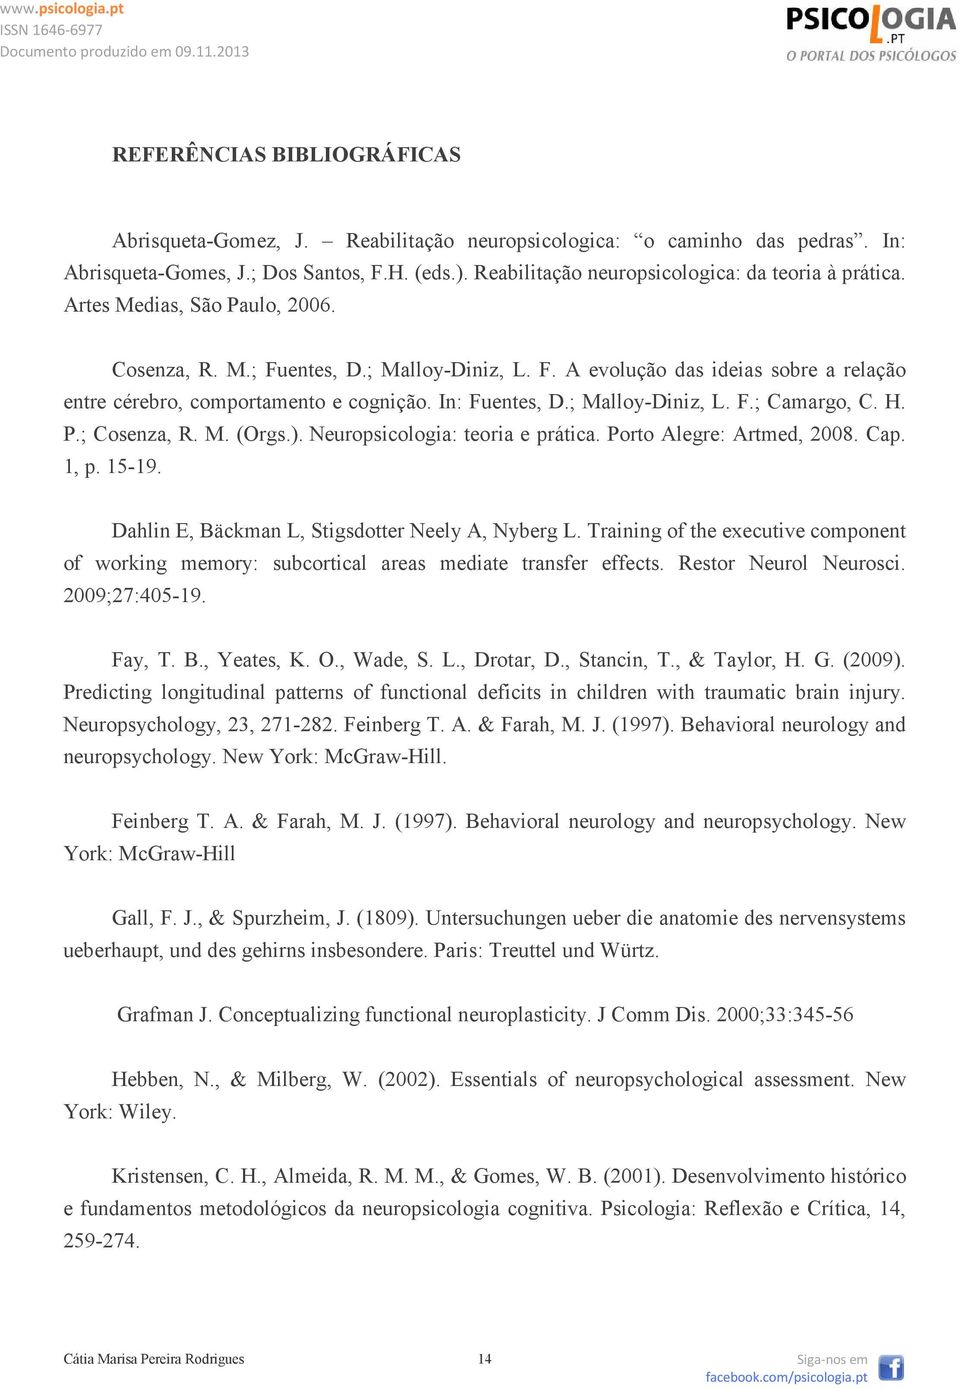 In: Fuentes, D.; Malloy-Diniz, L. F.; Camargo, C. H. P.; Cosenza, R. M. (Orgs.). Neuropsicologia: teoria e prática. Porto Alegre: Artmed, 2008. Cap. 1, p. 15-19.